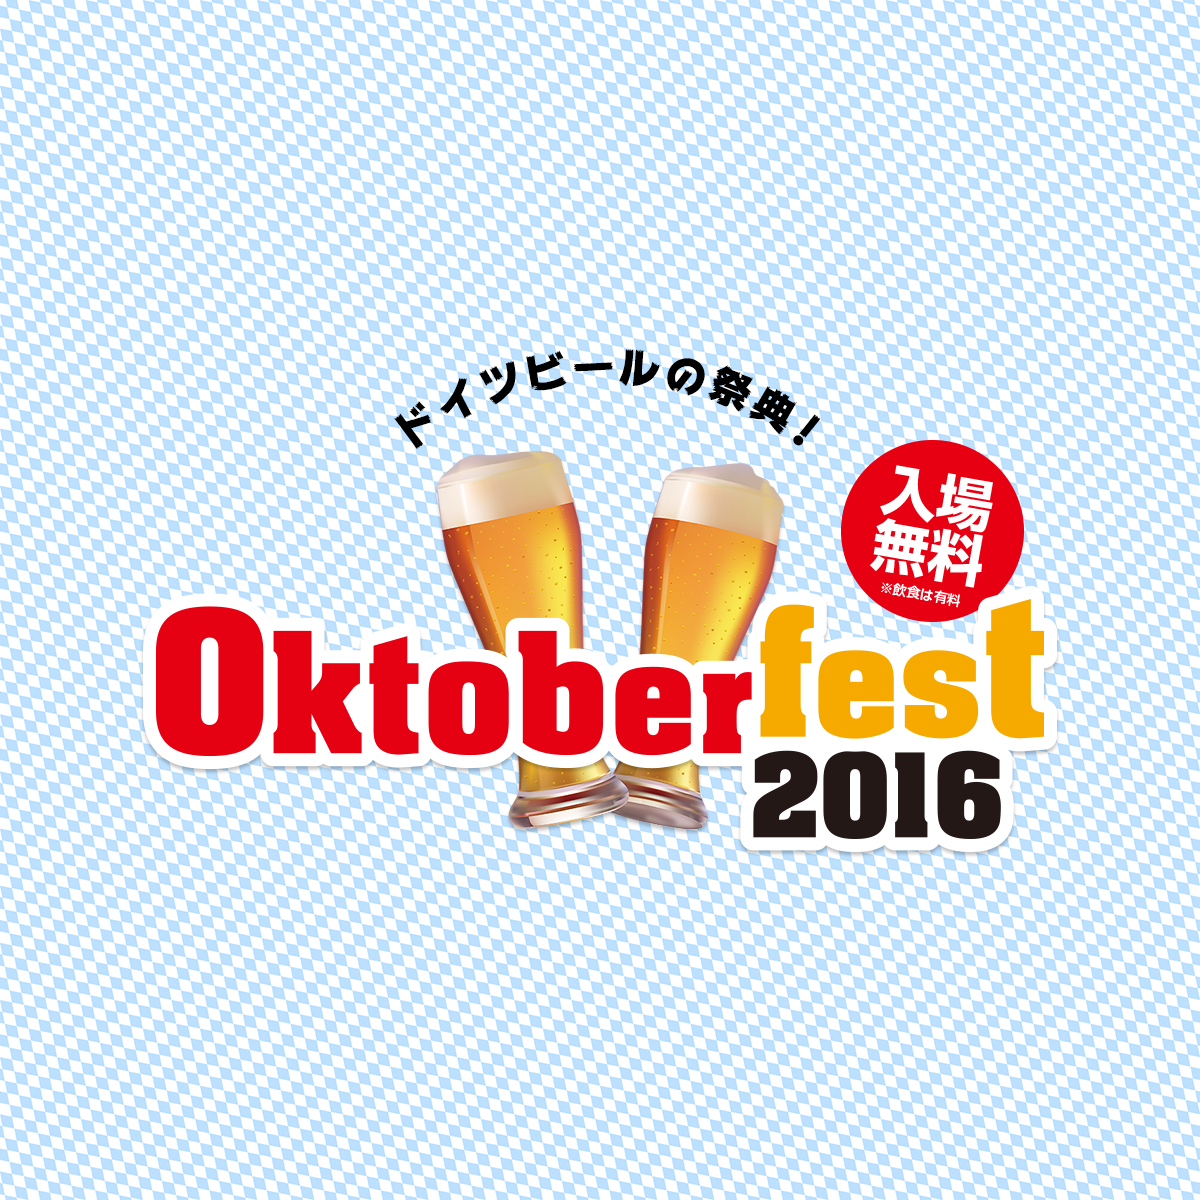 OKTOBERFEST 2016 日本公式サイト